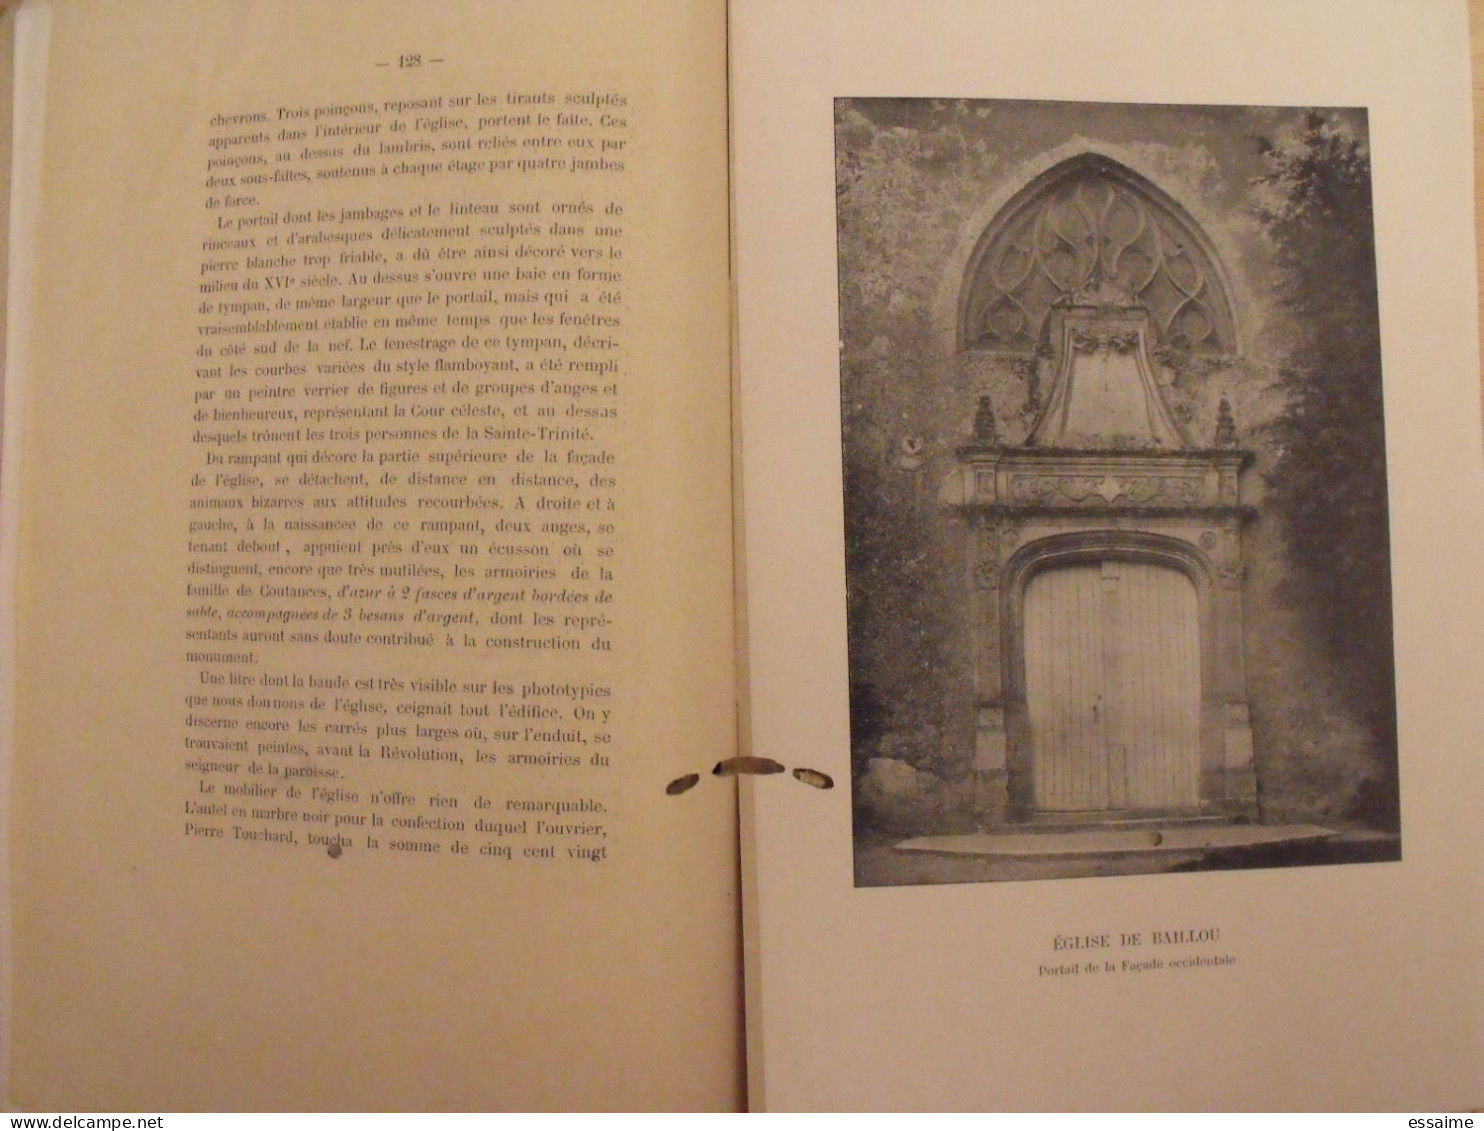 revue historique et archéologique du Maine. année 1908, 2ème semestre (2 livraisons). tome LXIV. Mamers, Le Mans